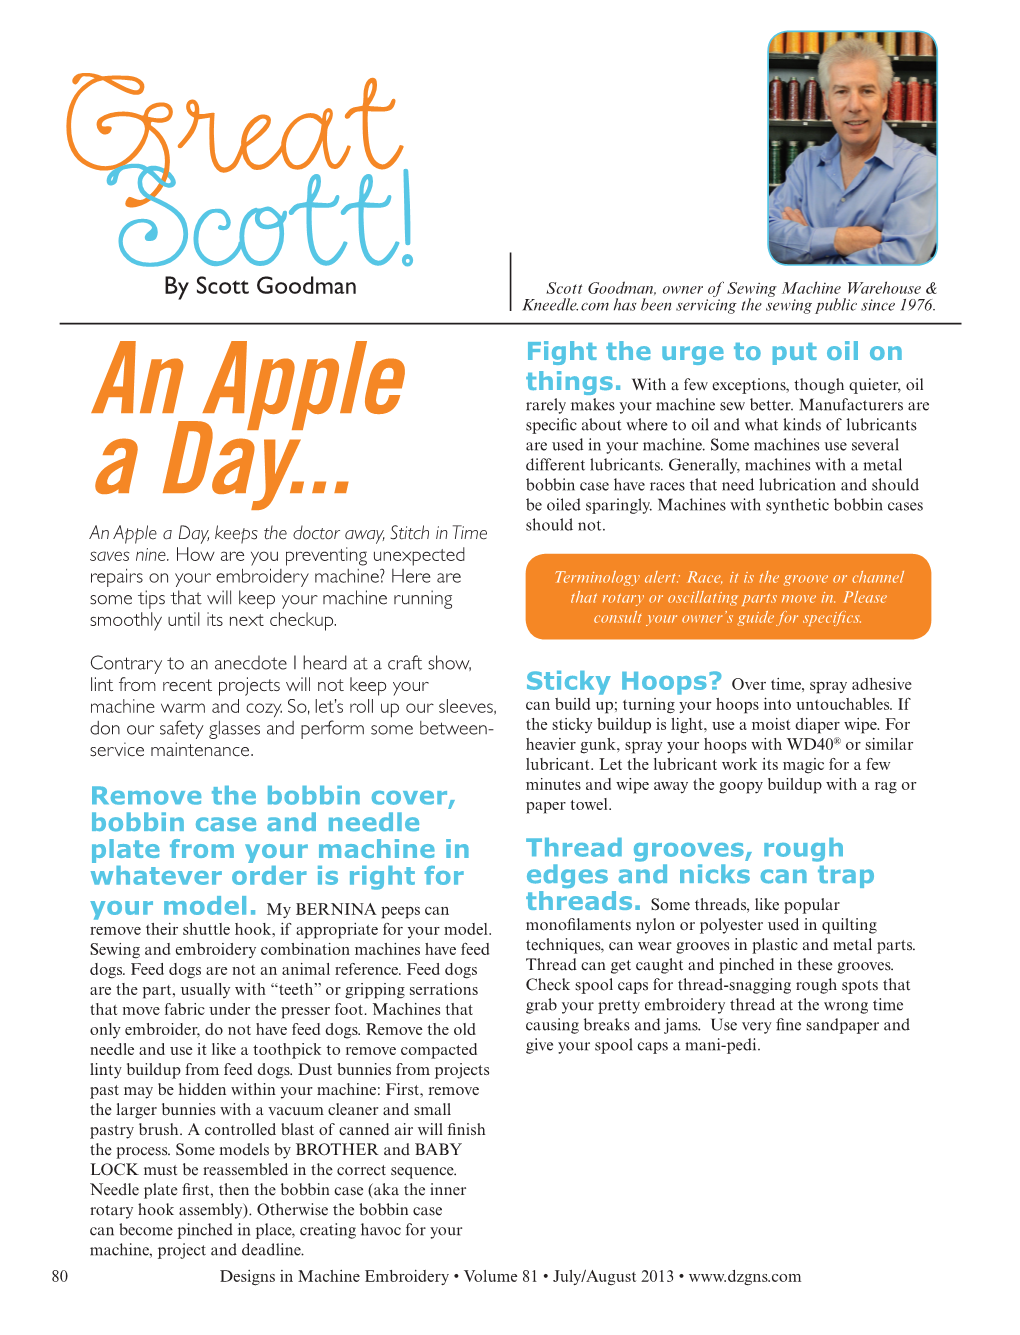 Great Scott! "An Apple a Day..."